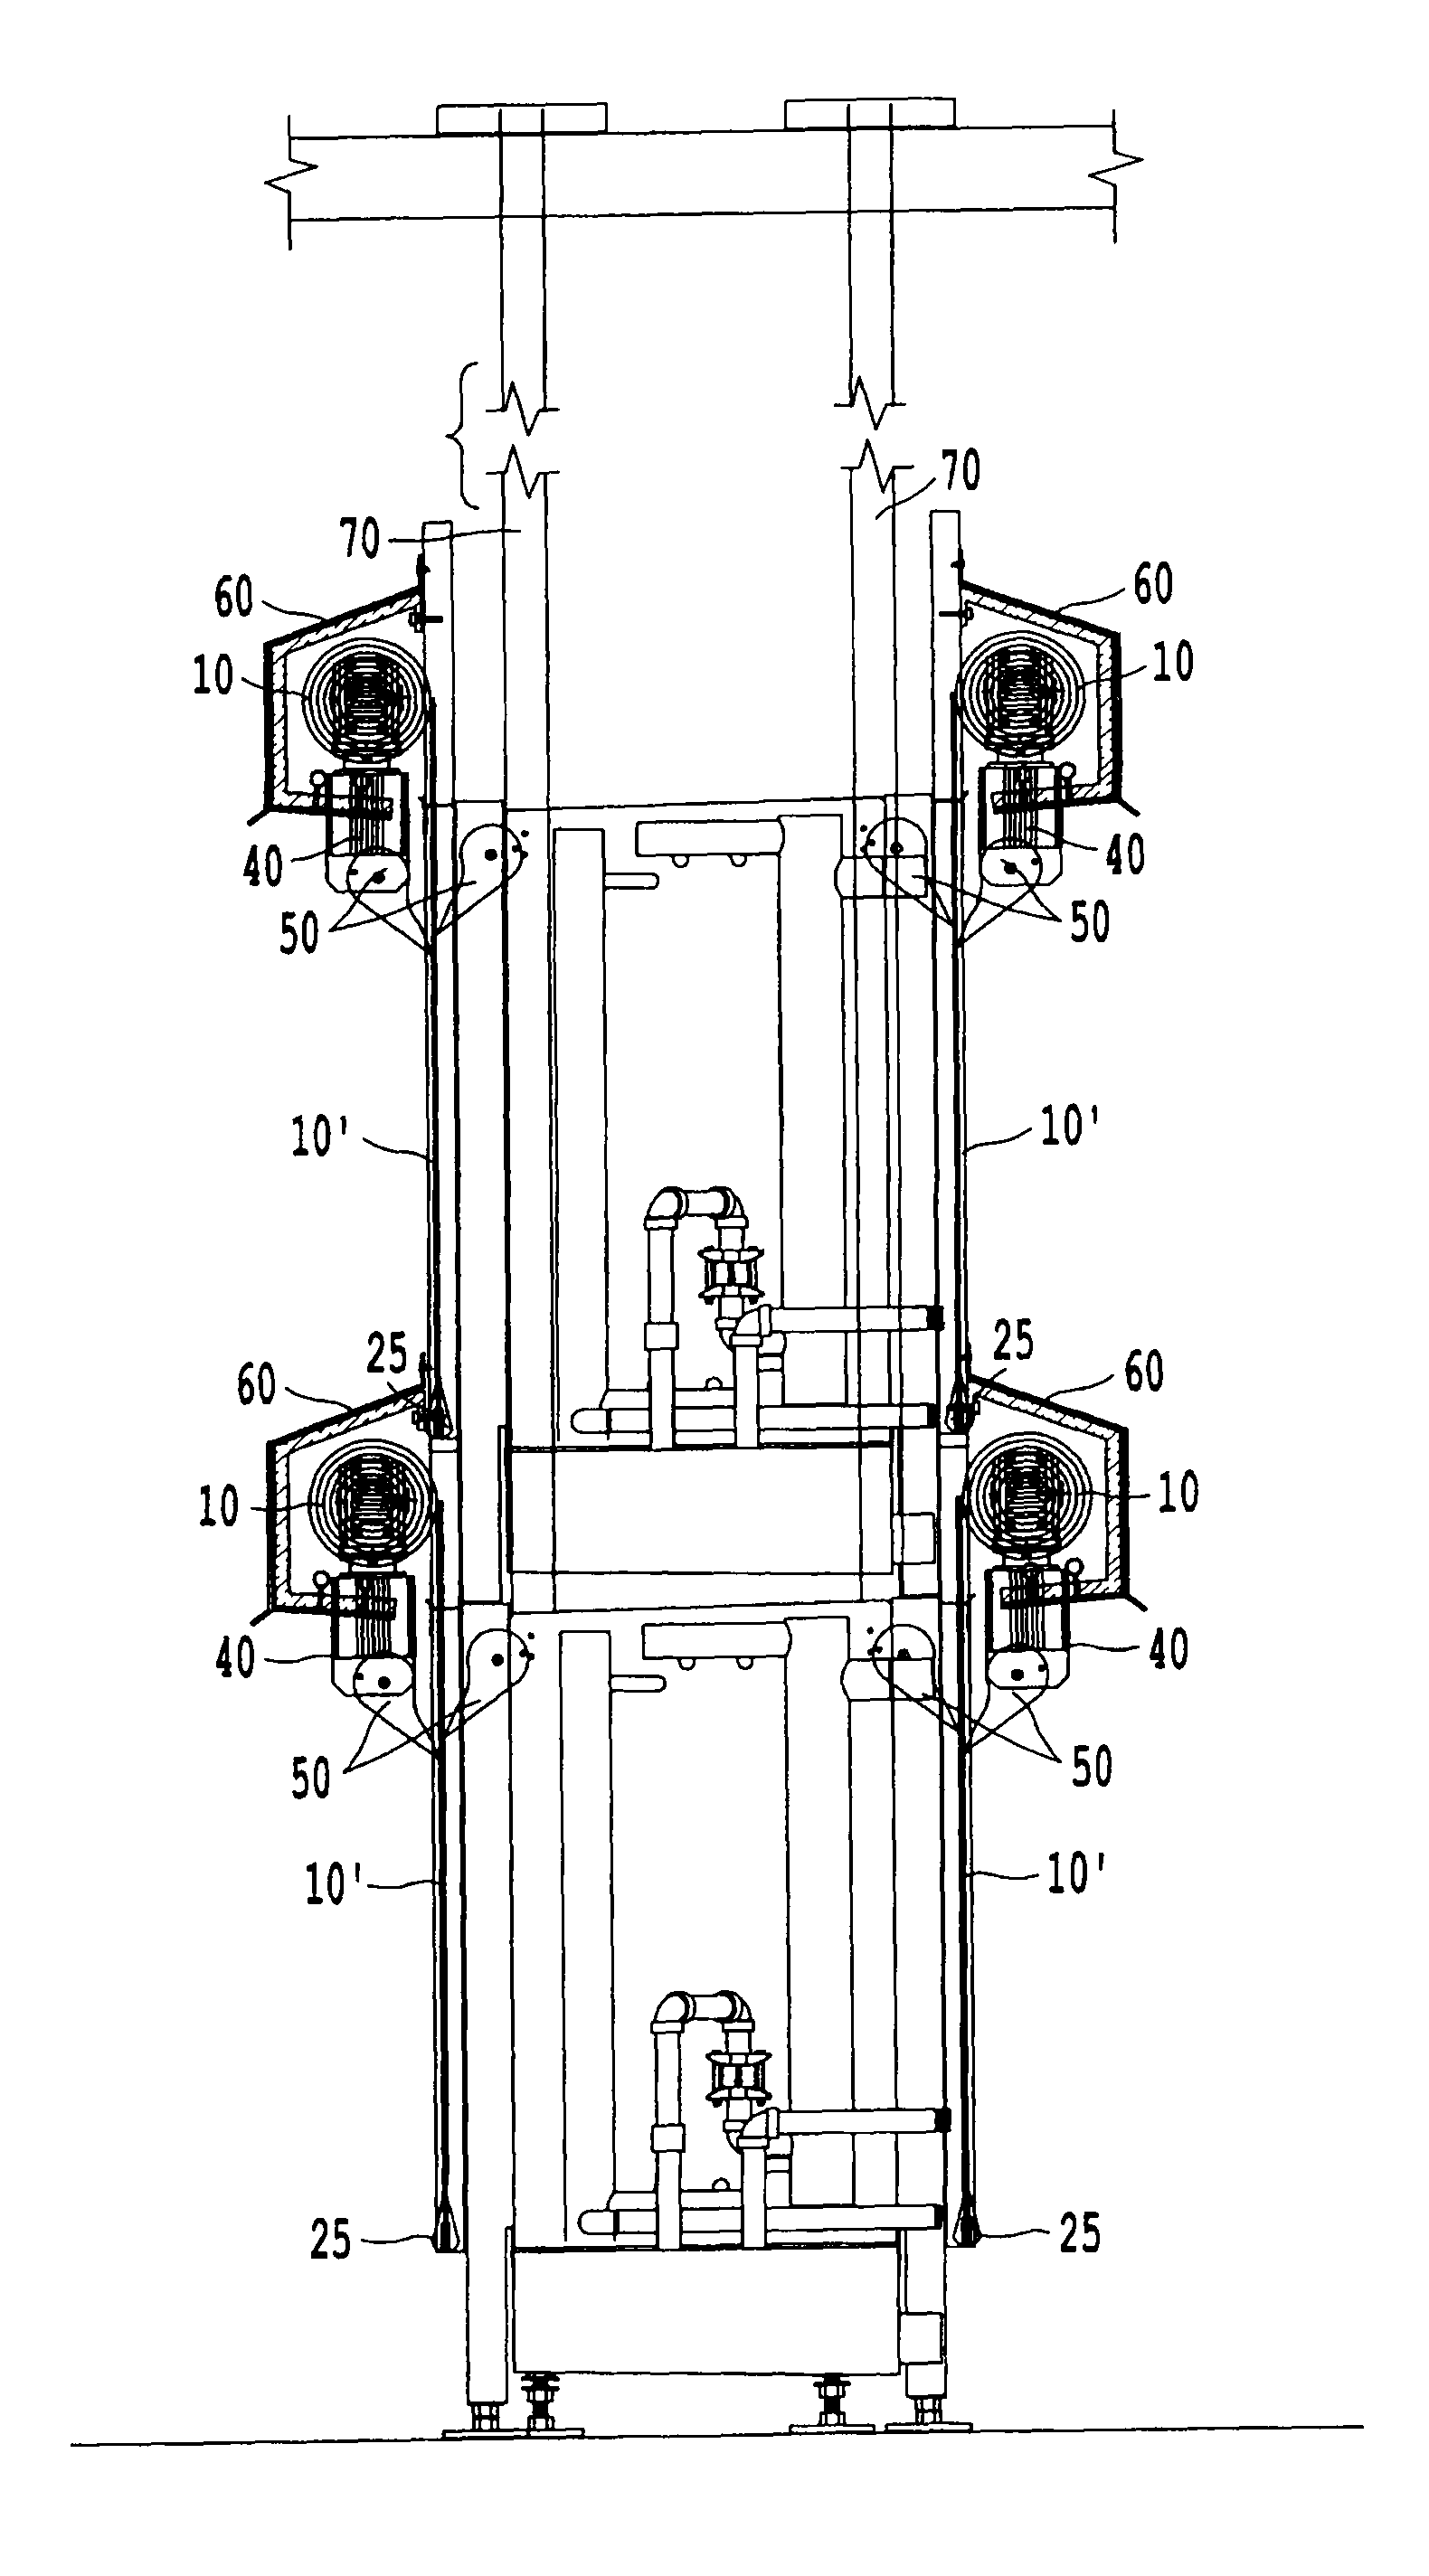 Evaporator door system with movable door